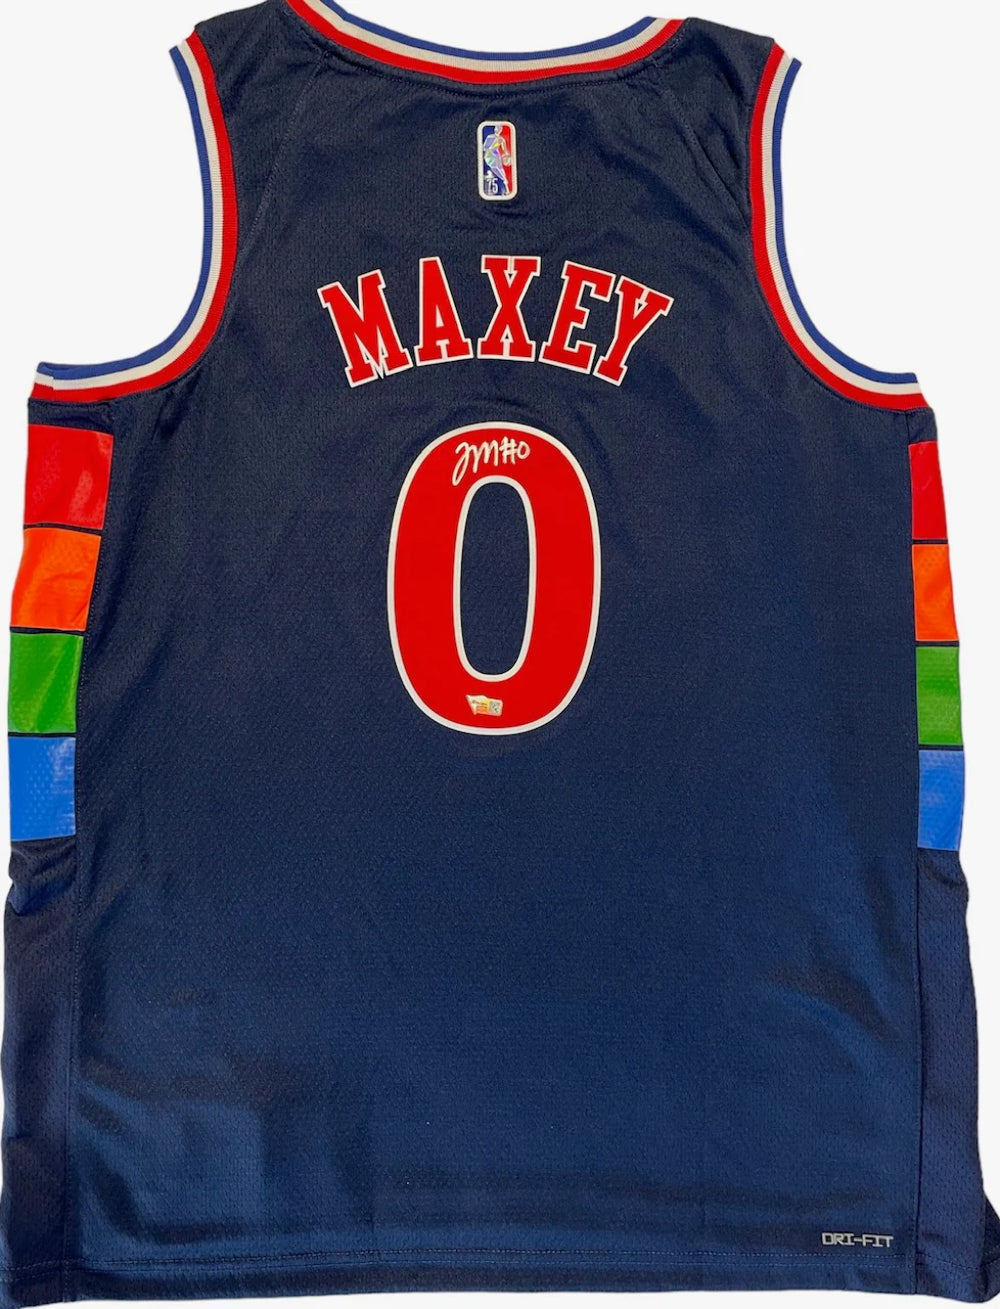 Tyrese Maxey Autographed Philadelphia 76ers Swingman Jersey (Fanatics) Image 1